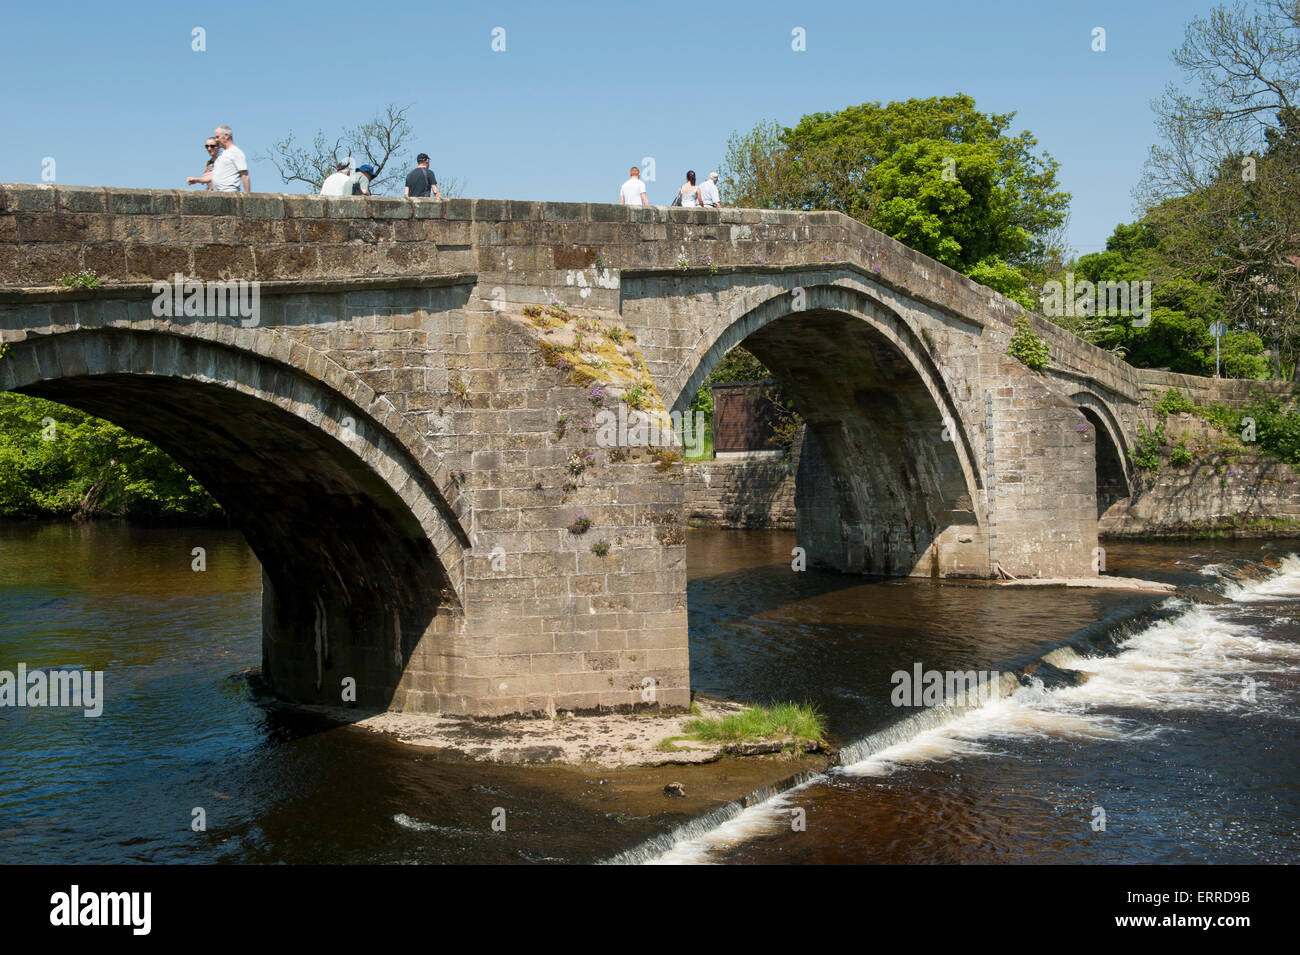 Le persone che attraversano le SCENIC RIVER Wharfe sulla antica pietra packhorse bridge sul flusso di acqua e piccole weir - Ponte Vecchio, Ilkley, West Yorkshire, Inghilterra, Regno Unito. Foto Stock